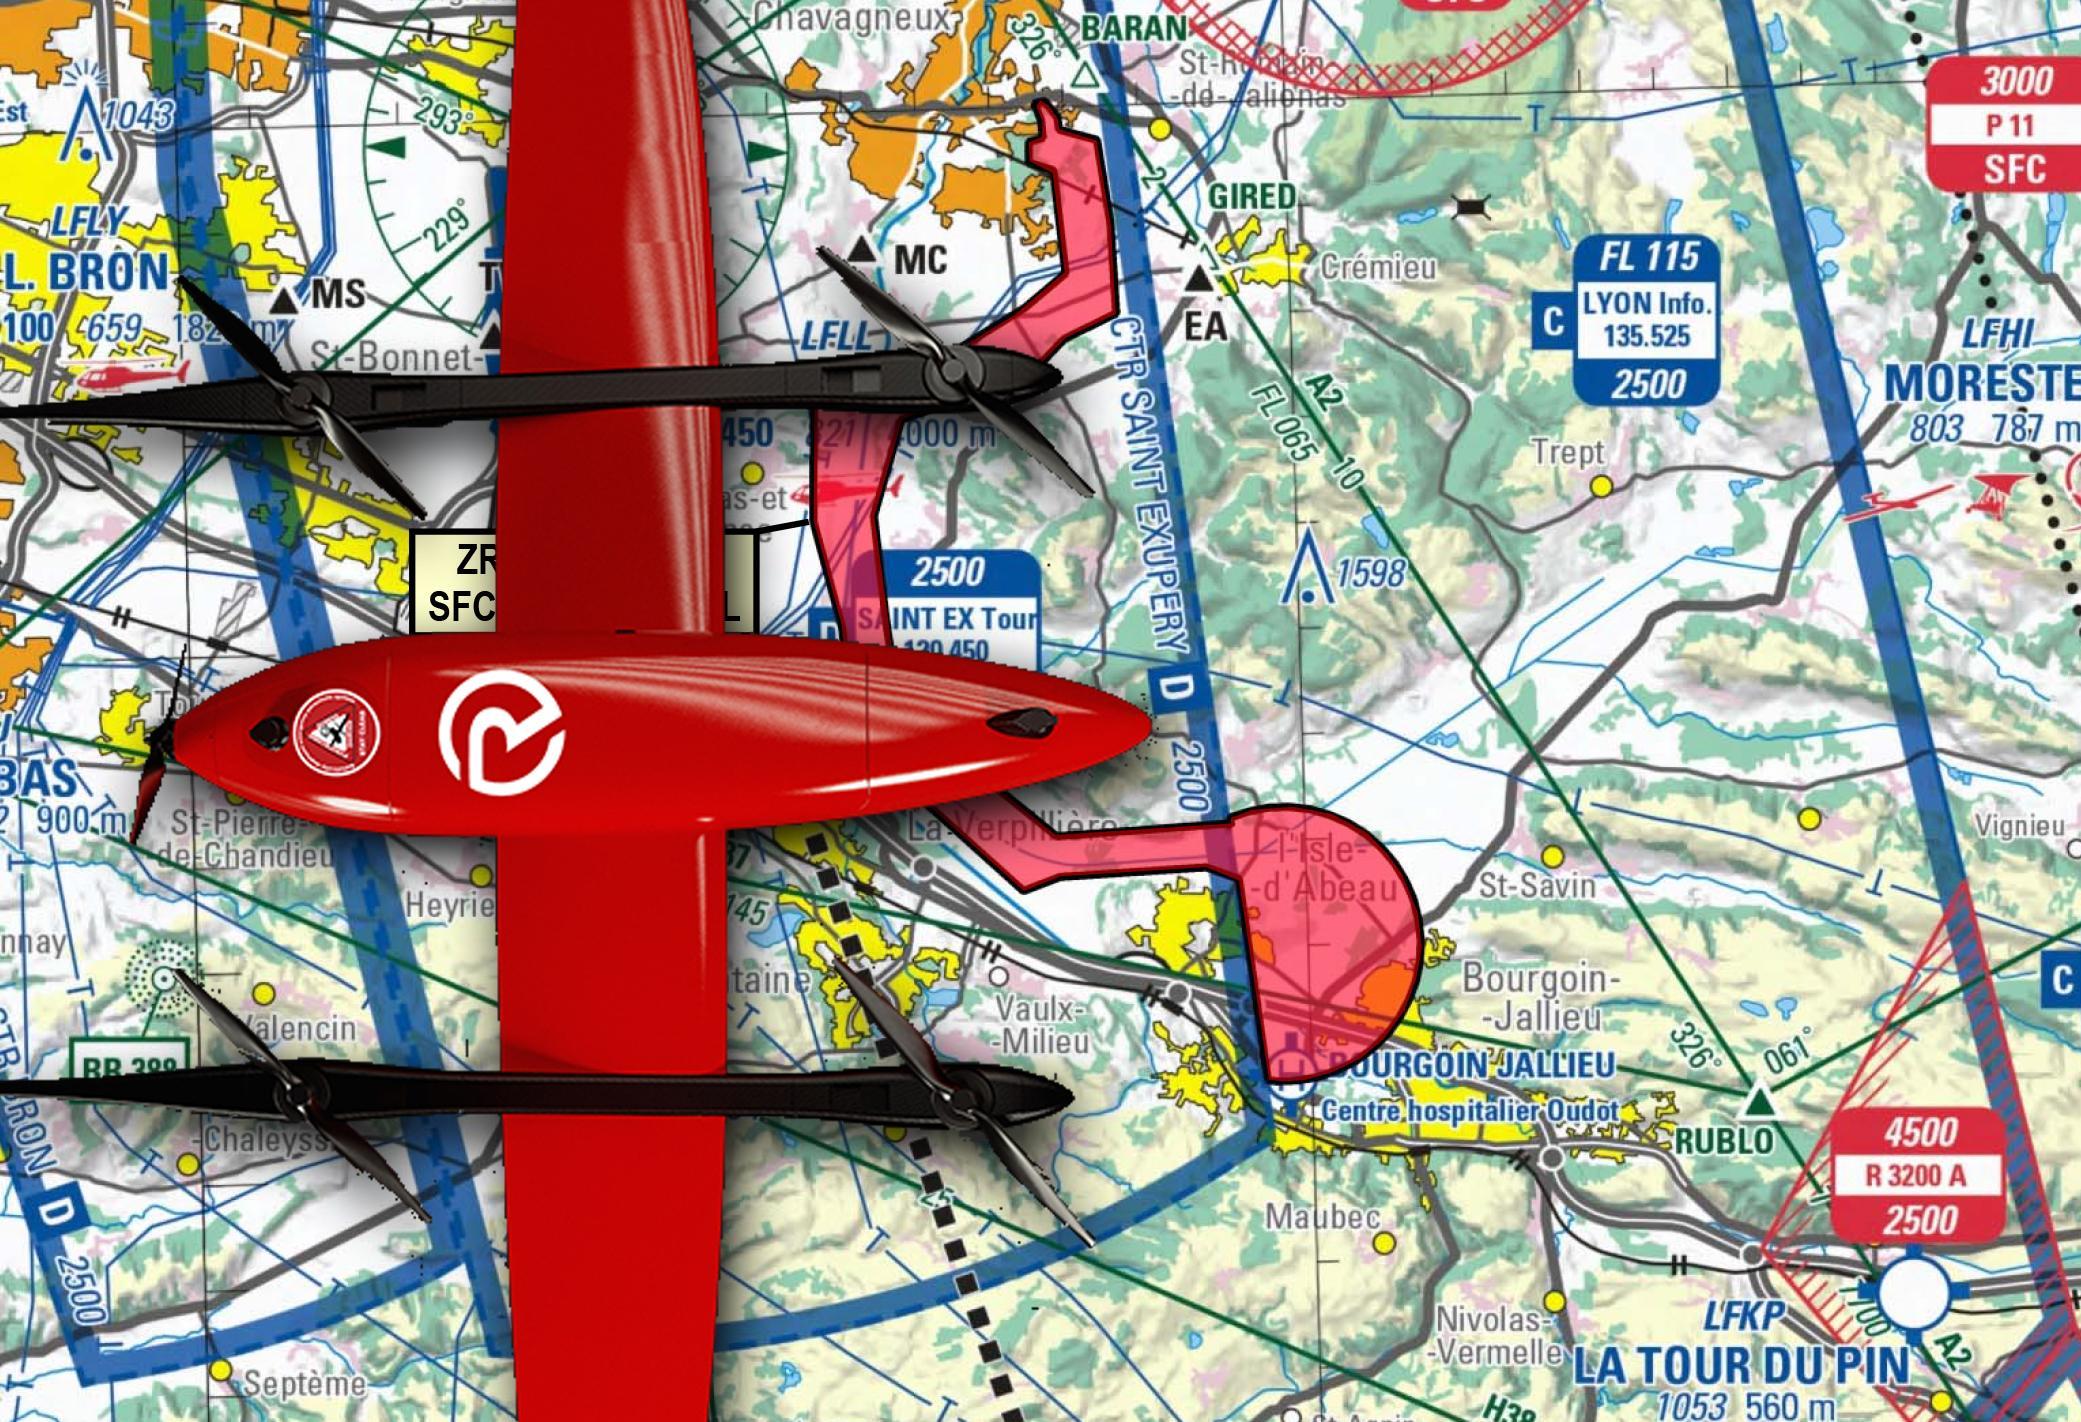 Expérimentations de livraisons médicales en drone près de Lyon (et interdictions de vol)